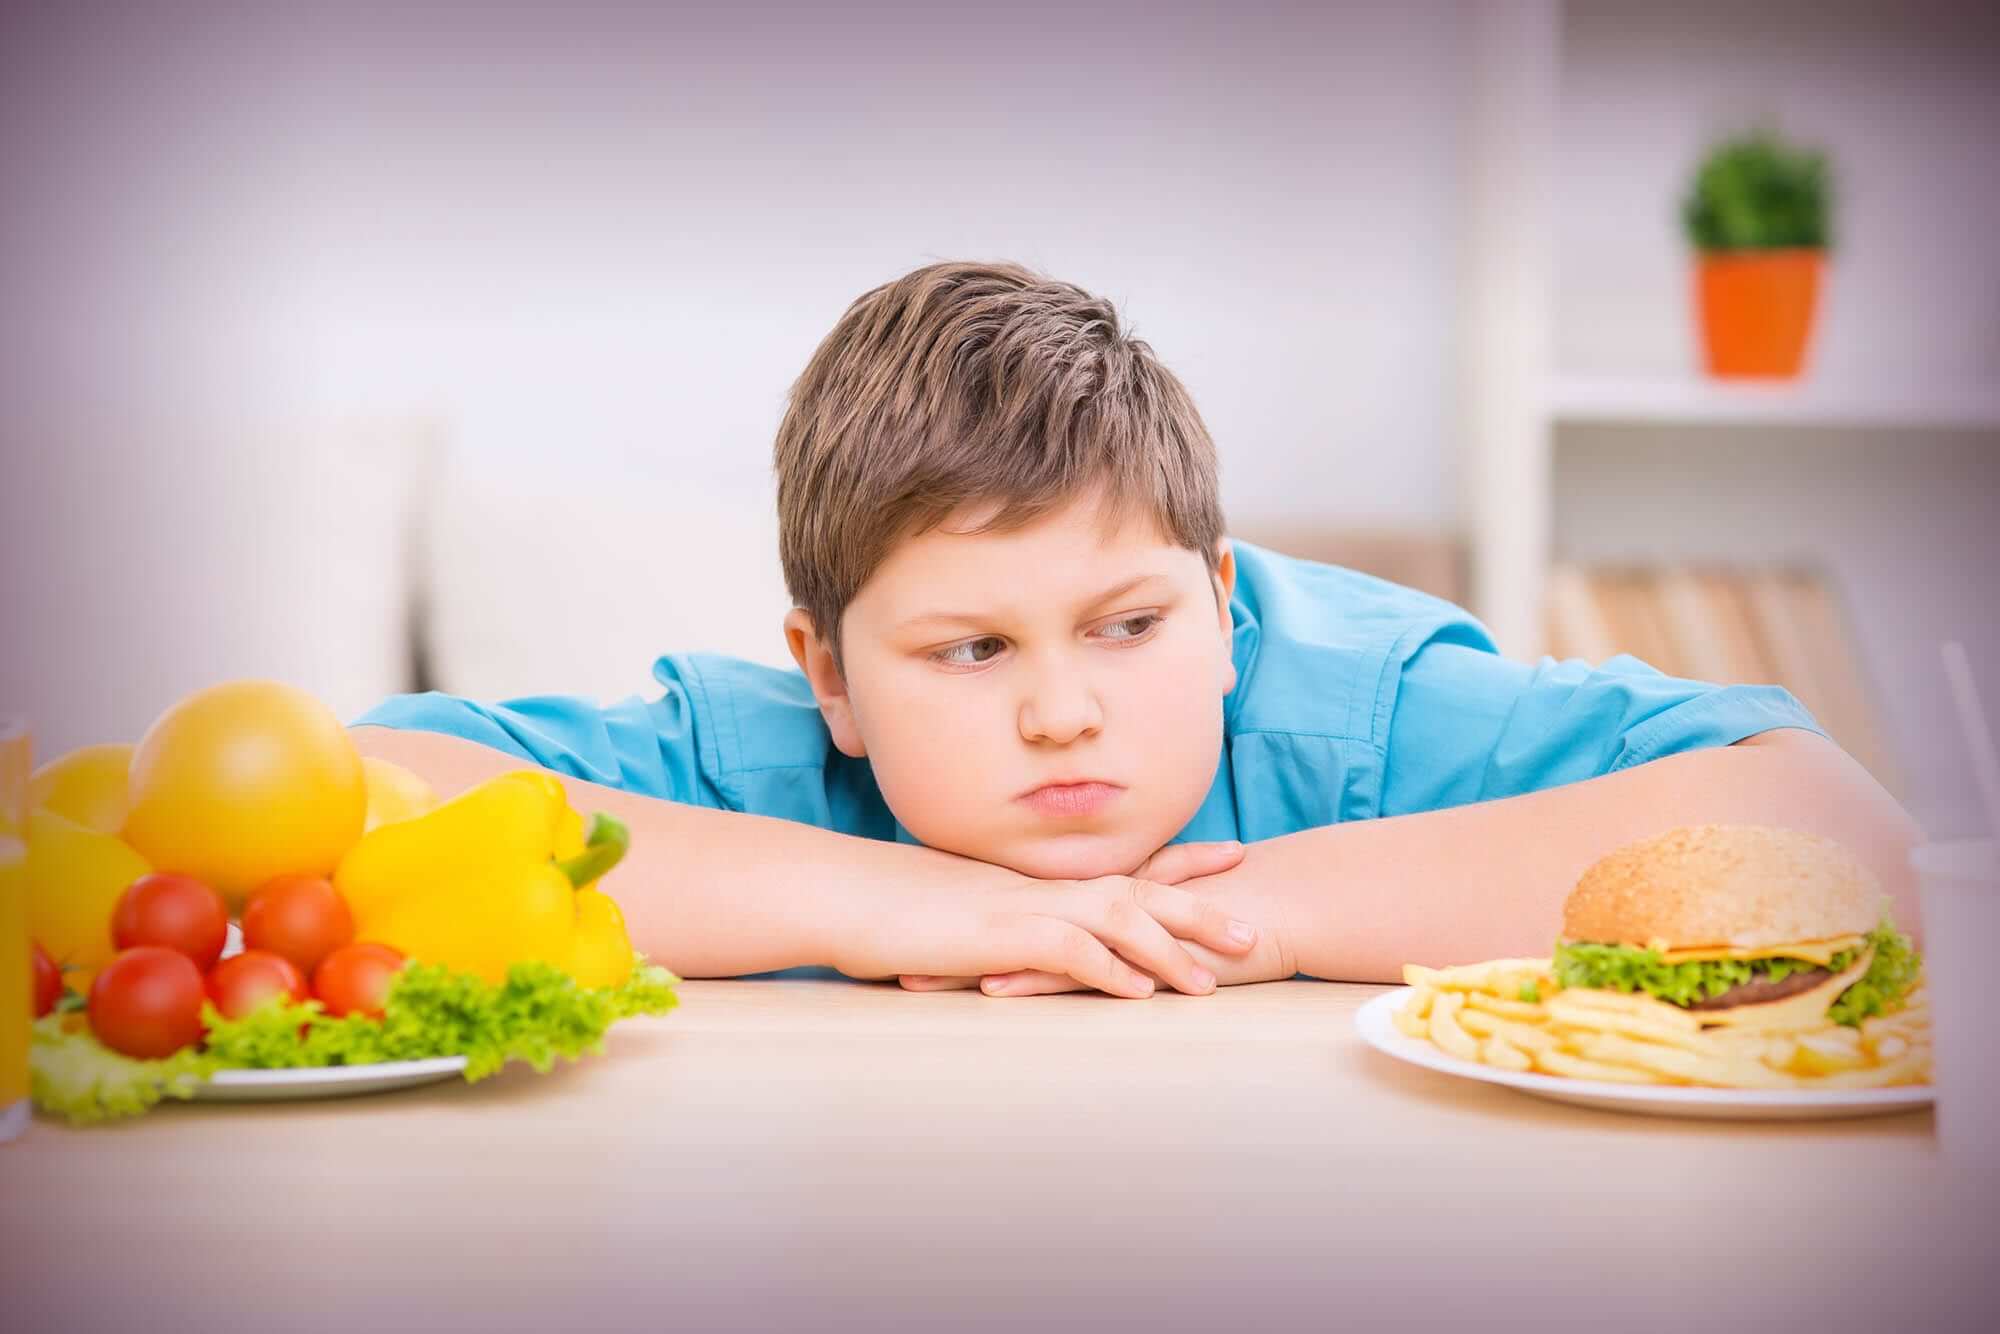 علت اضافه وزن در کودکان چیست؟